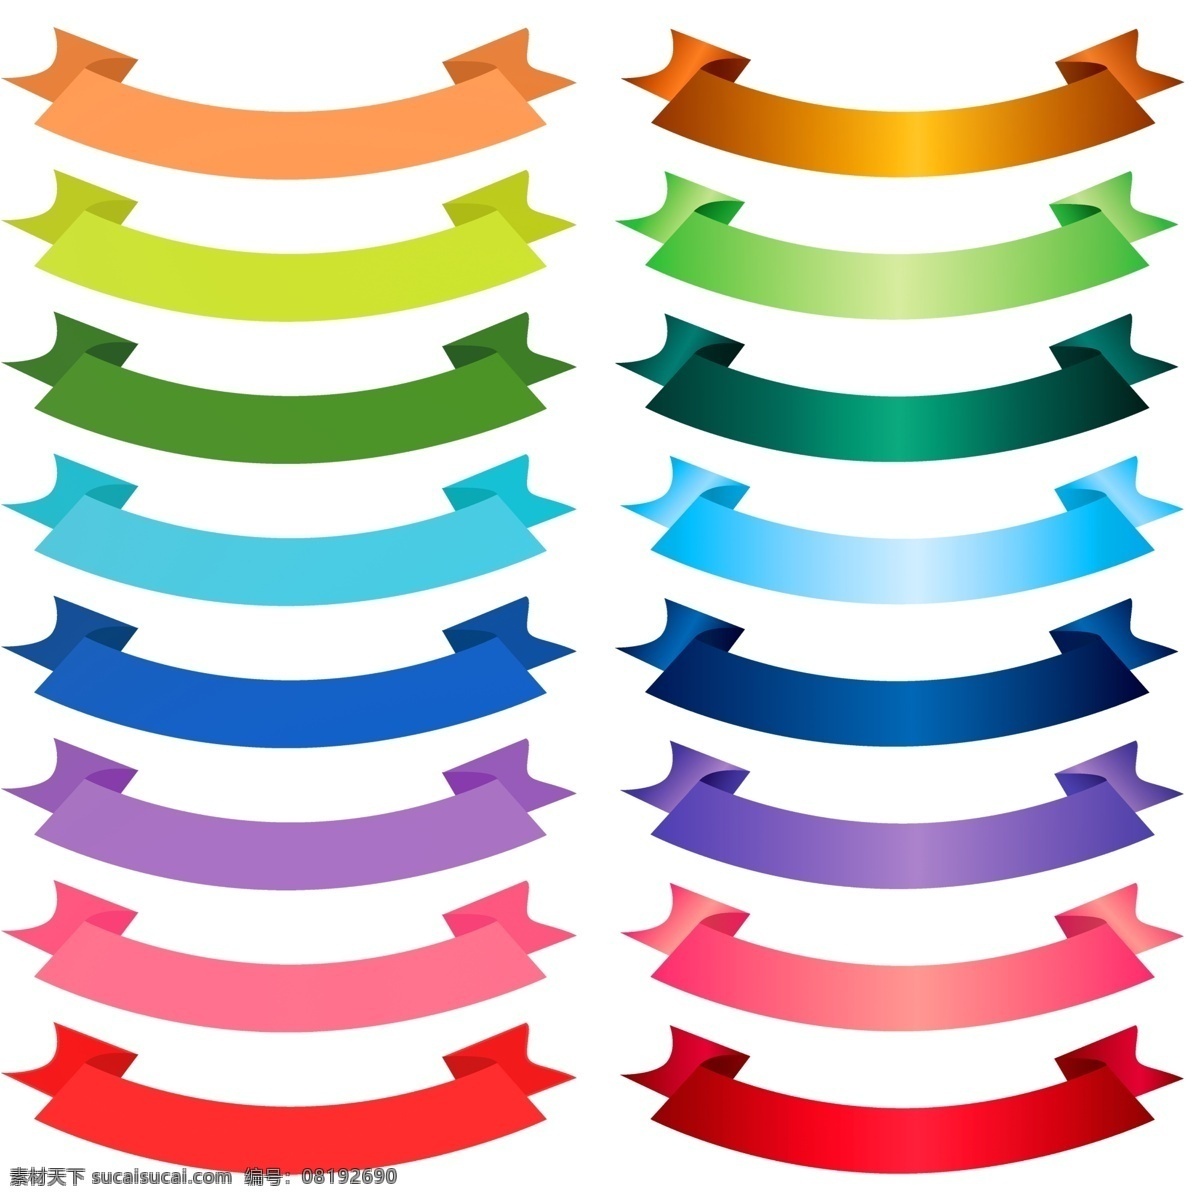 彩色彩带 促销彩带 丝带 彩带元素 丝绸彩带 飘带 标志图标 其他图标